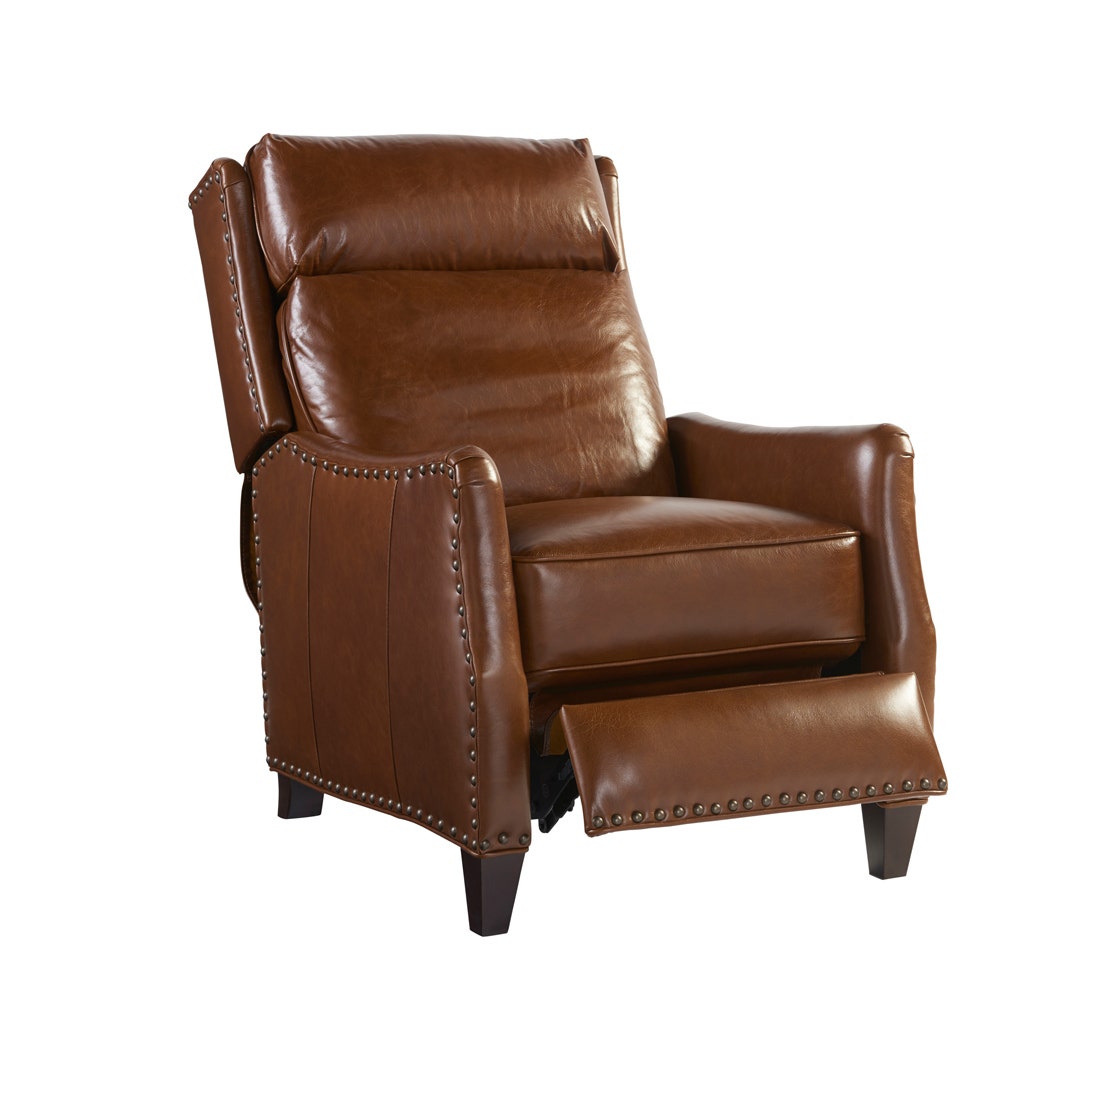 19151912-790555p-791-furniture-sofa-recliner-recliners-01